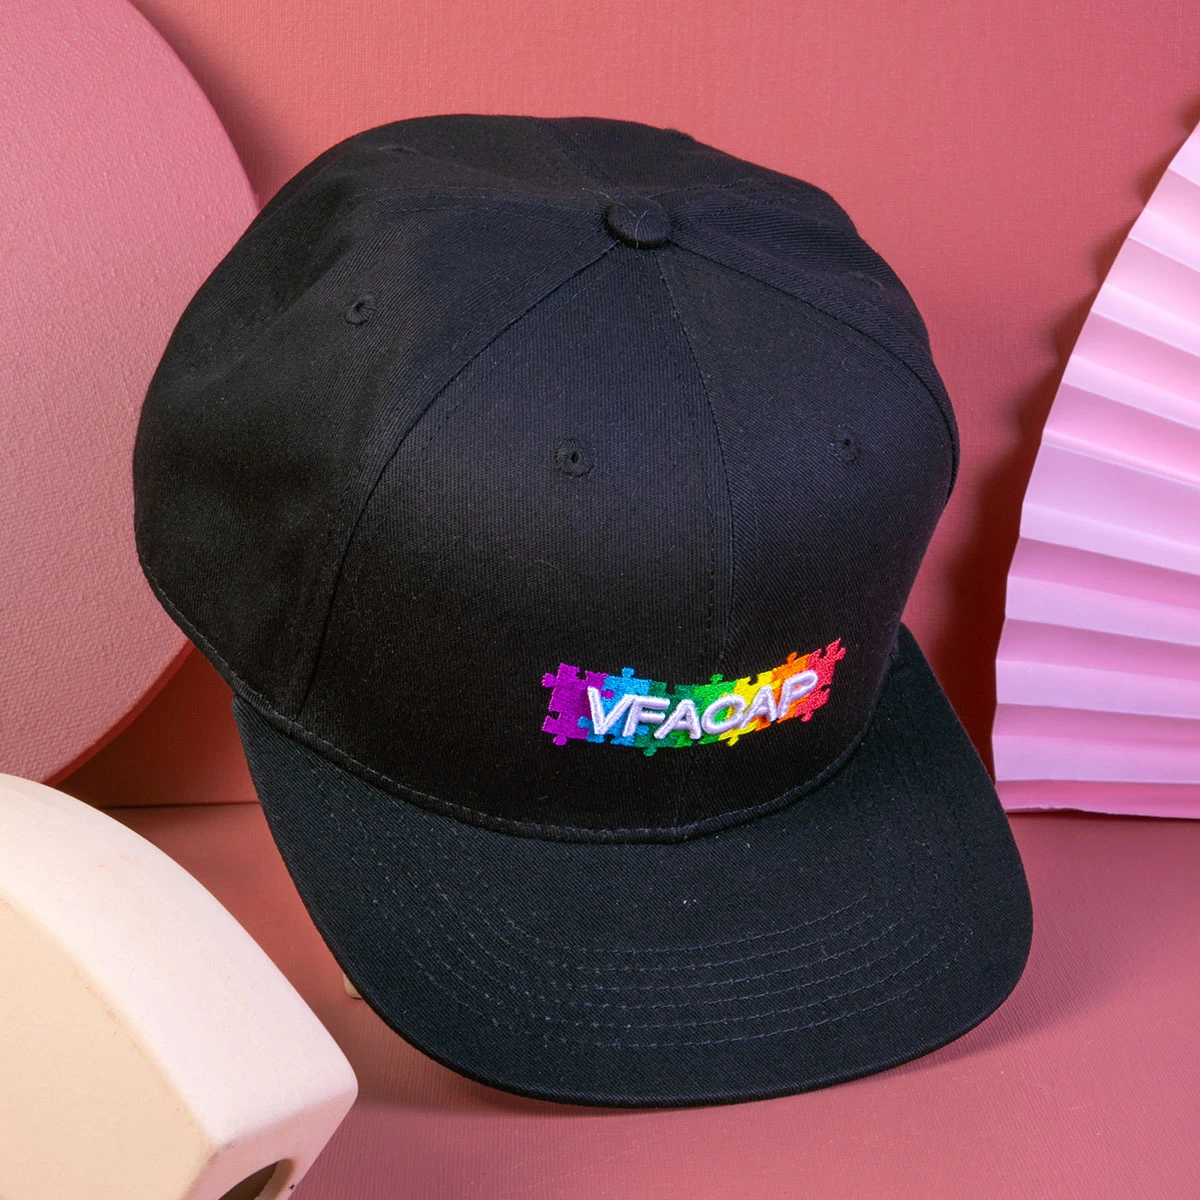 Cina lettere di design ricamo fabbrica cappelli snapback vfacap produttore